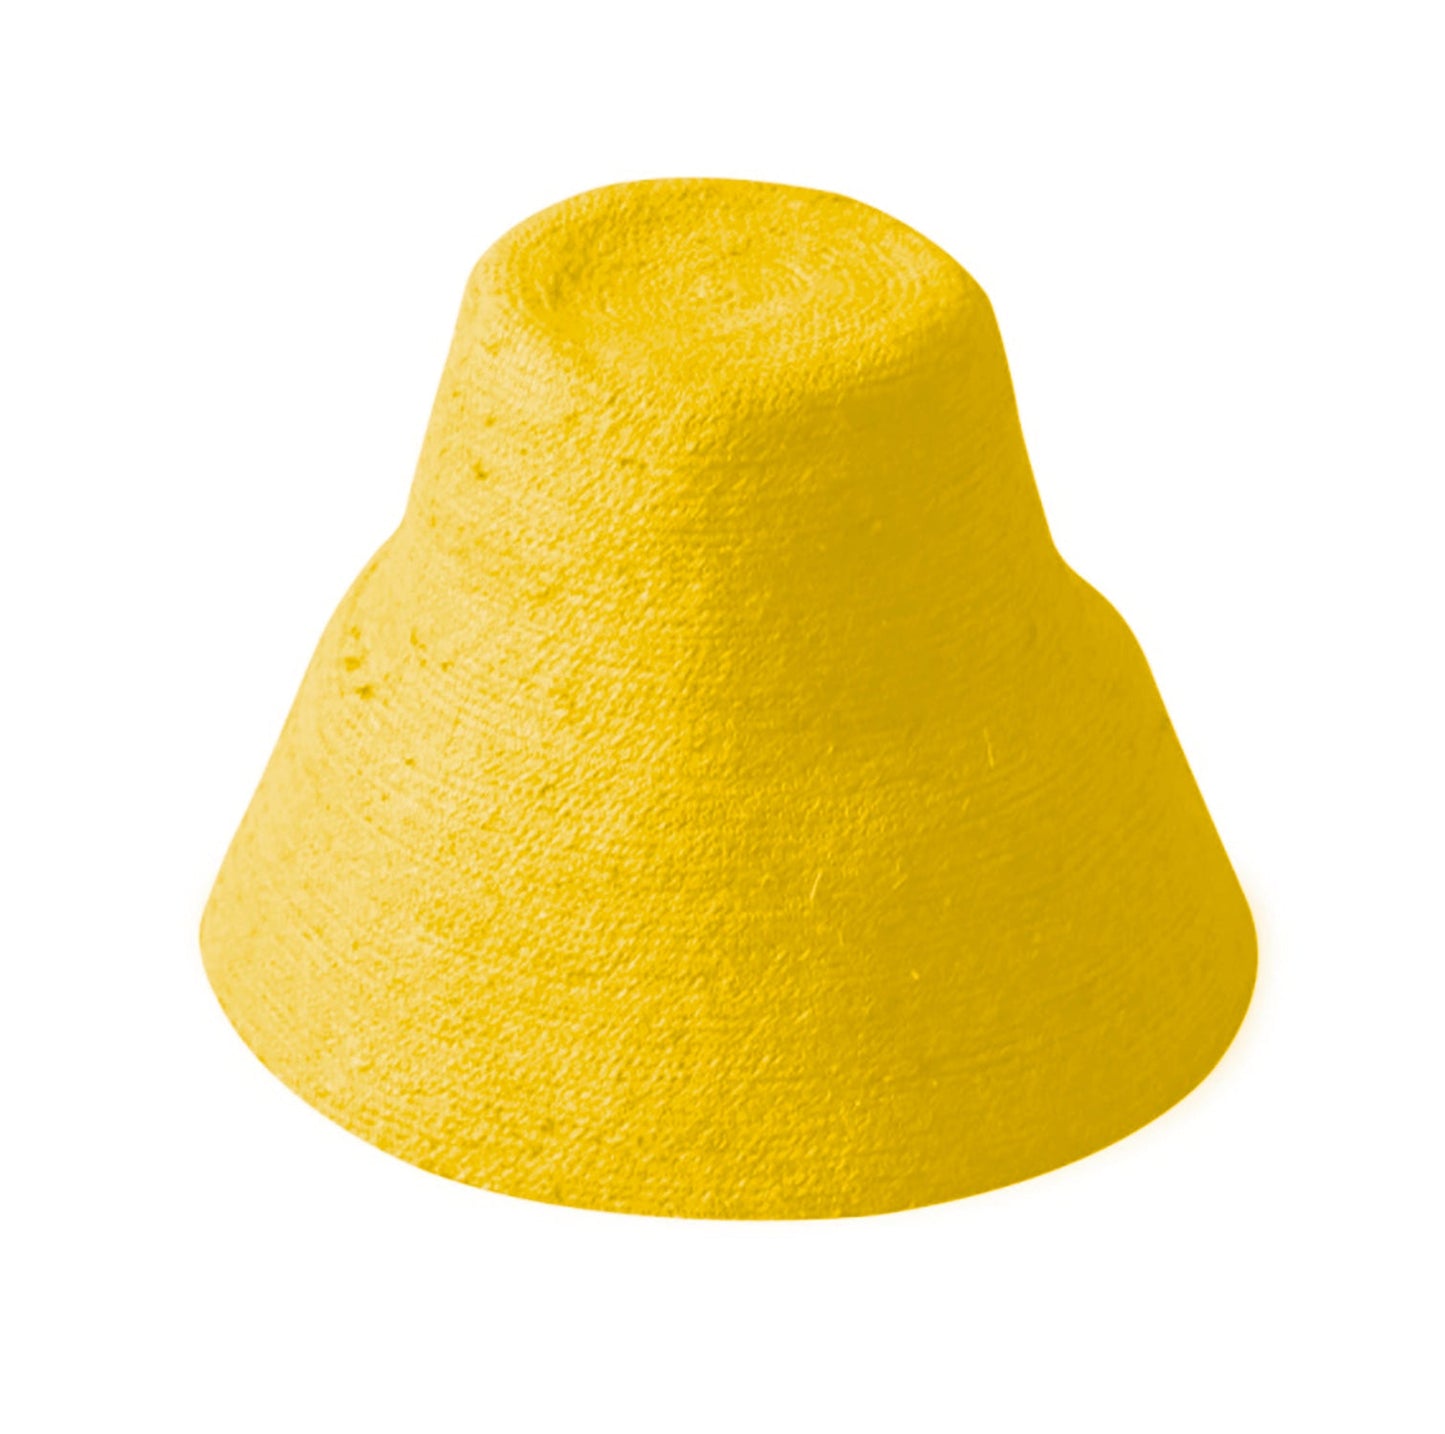 Jute Crochet Straw Hat in Yellow